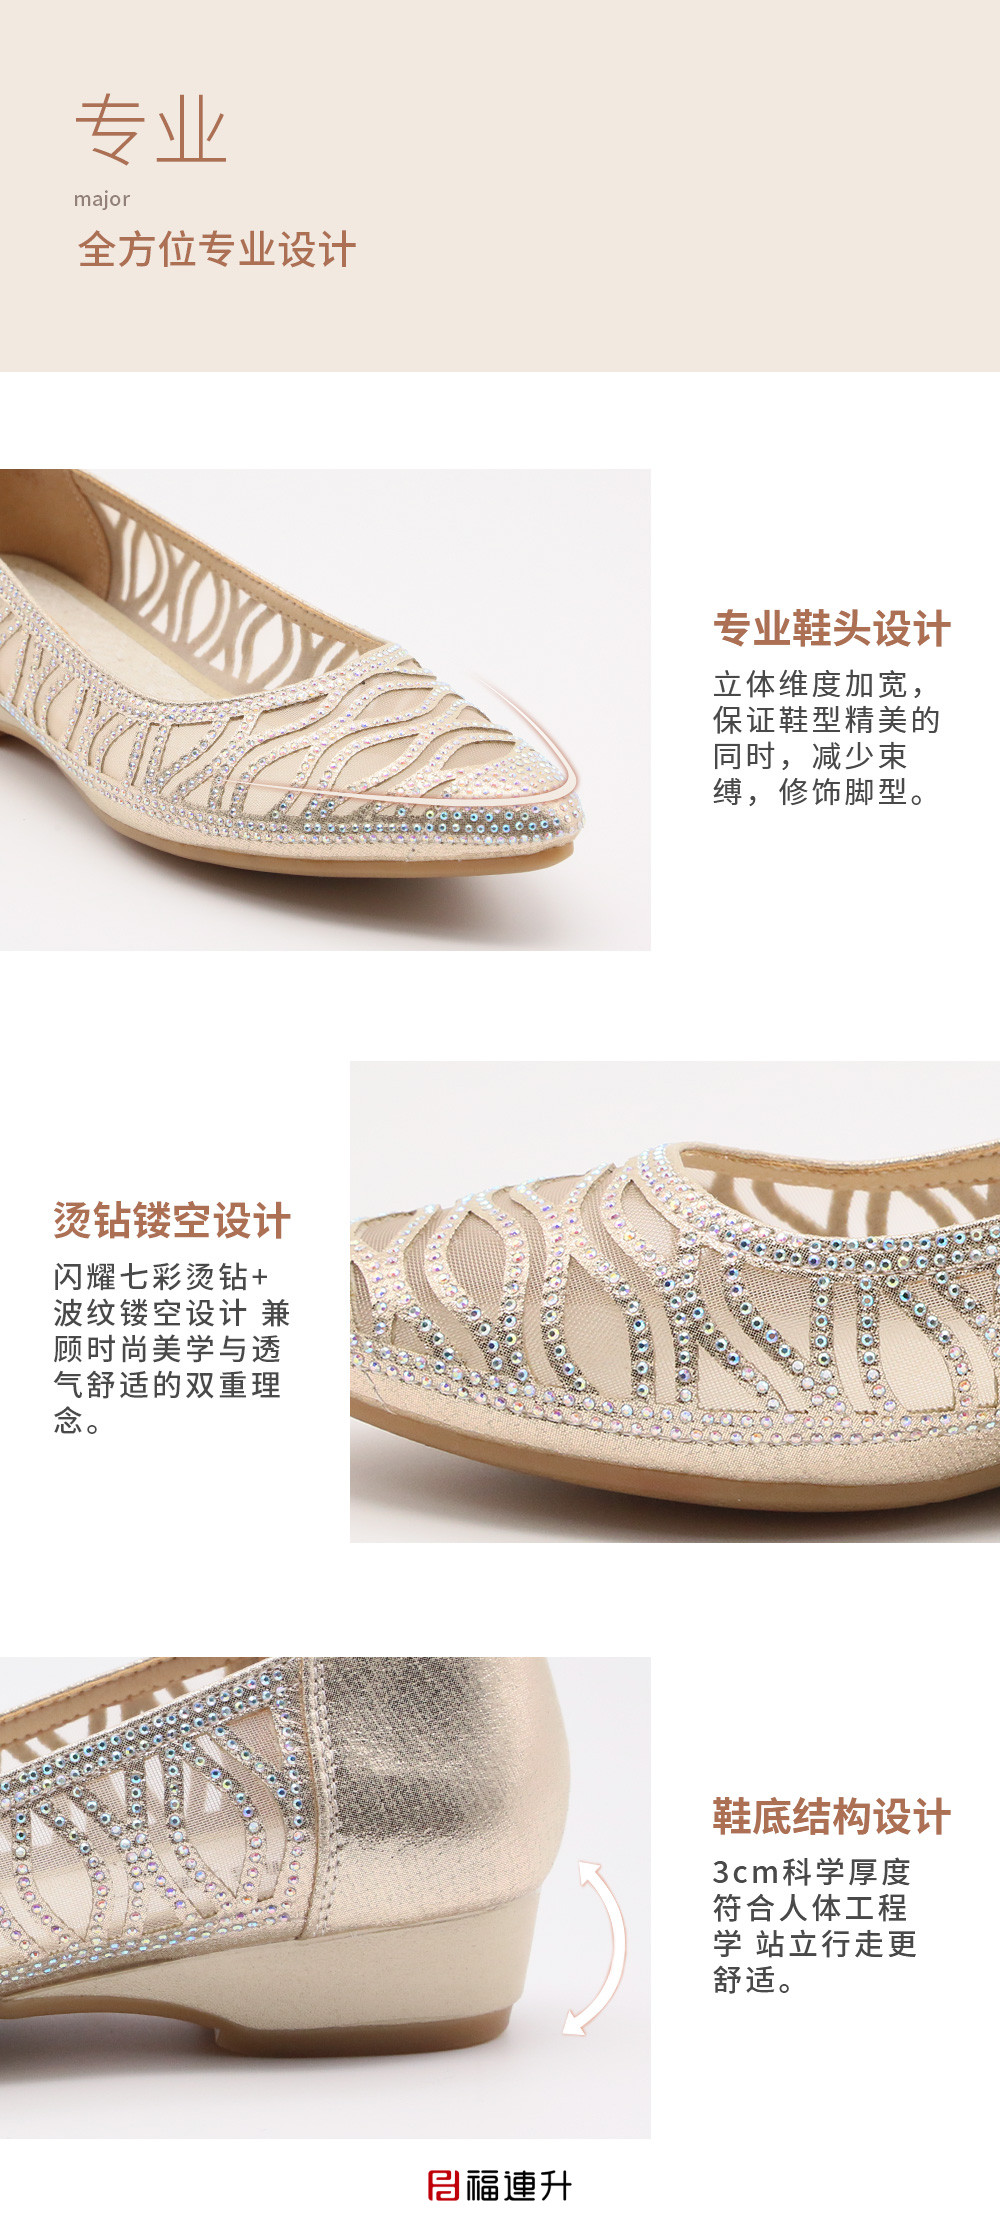 福连升夏时尚透气网孔低跟老北京布鞋女士凉鞋(图5)